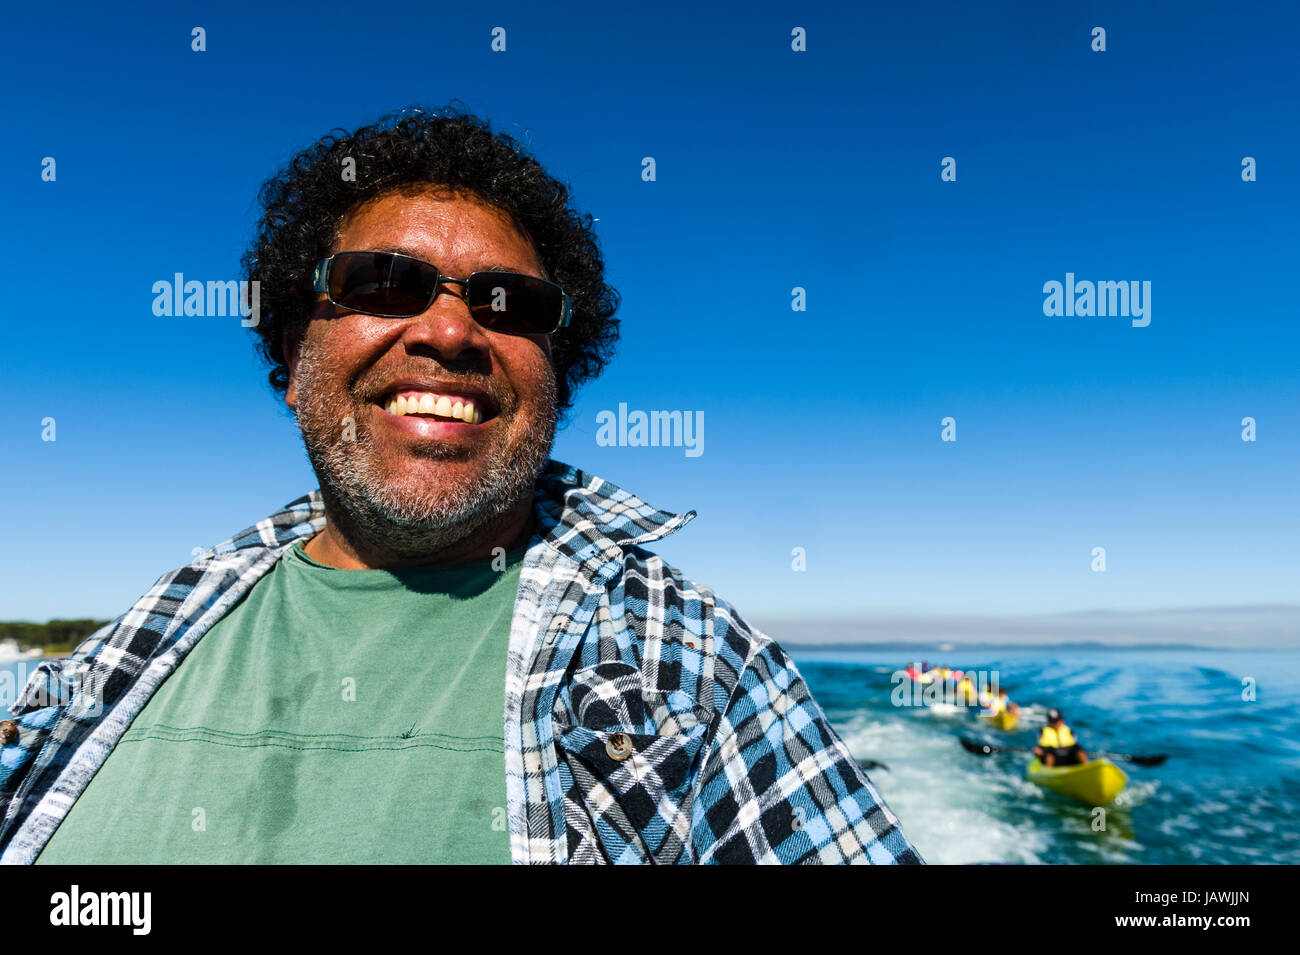 El rostro sonriente de un capitán de barco y guía aborigen con gafas de sol. Foto de stock